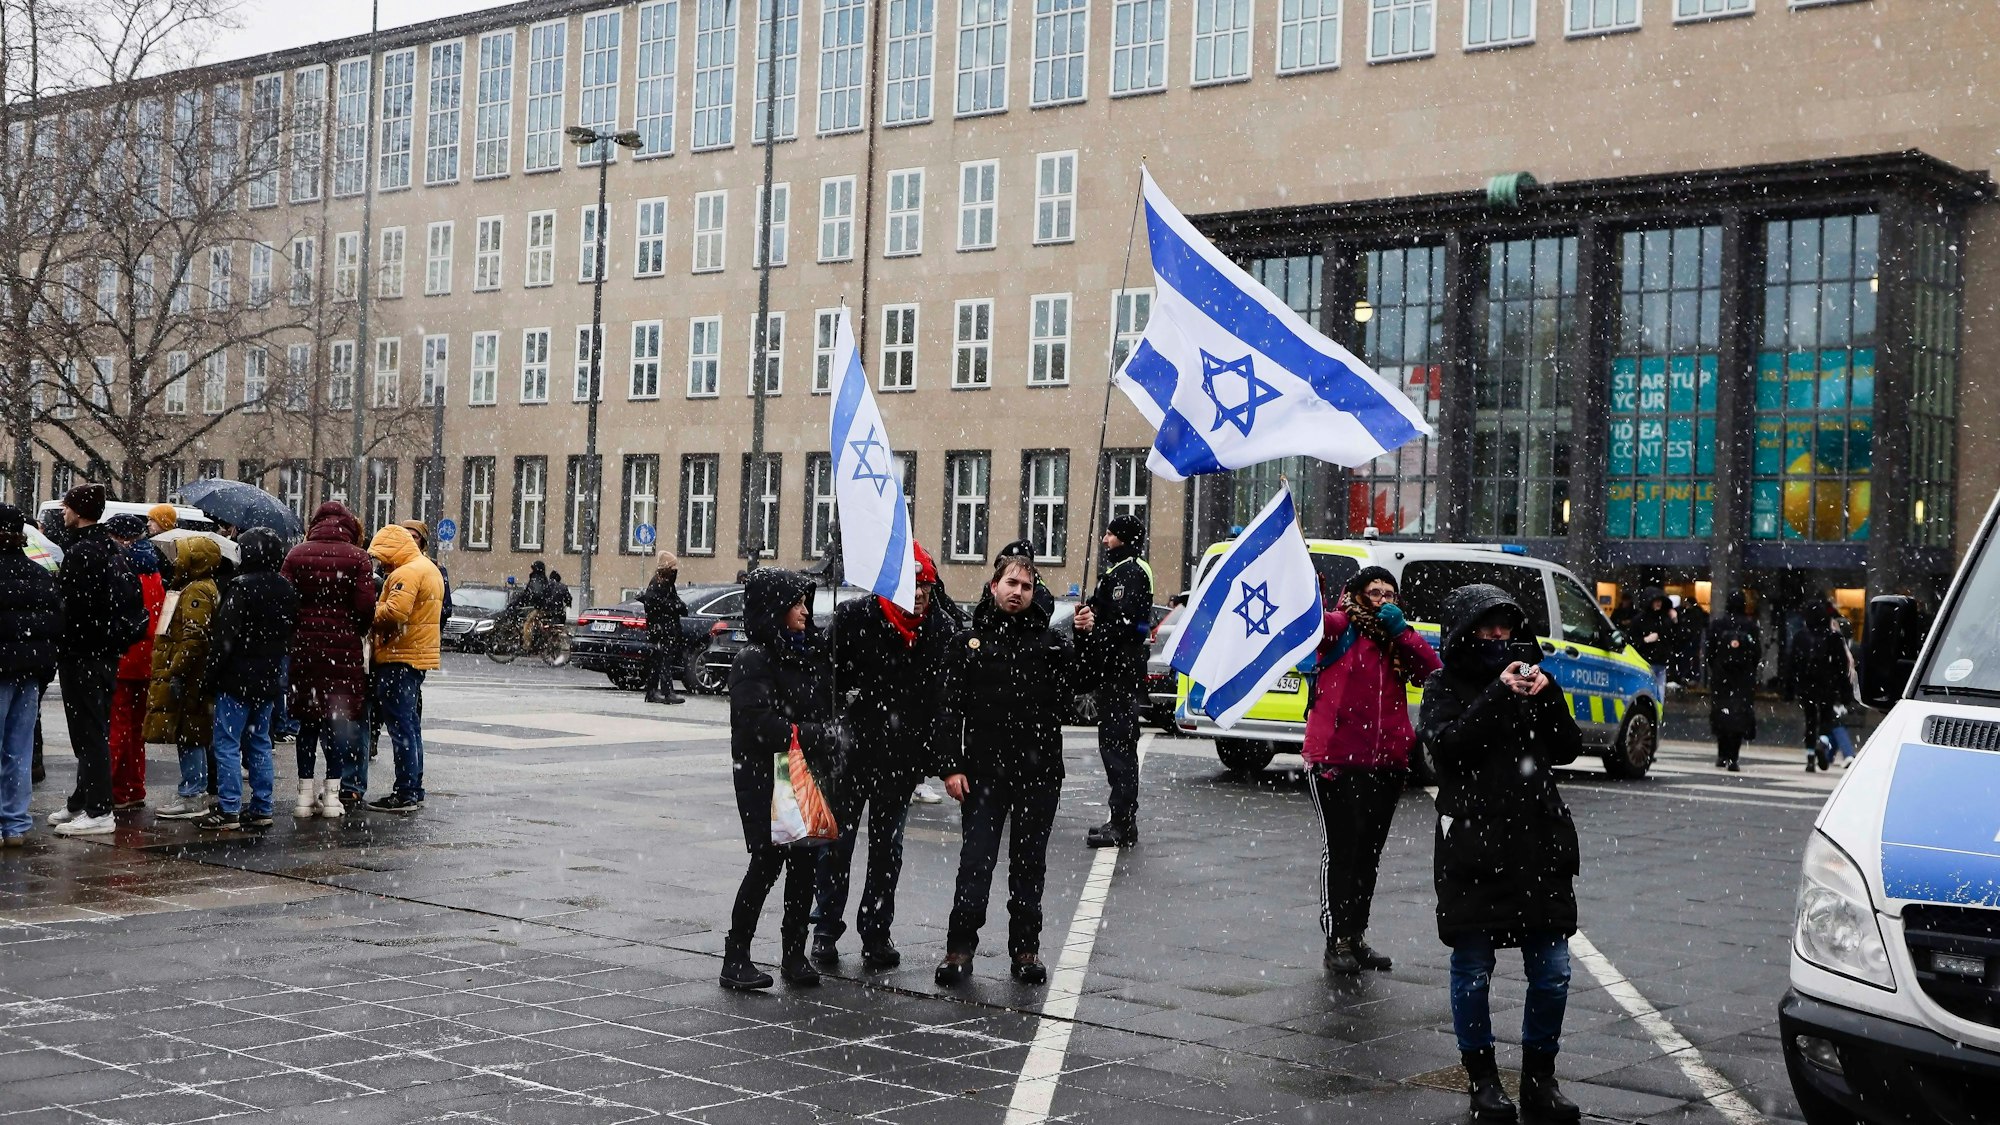 Demonstranten schwenken die Israel-Fahne auf einer Pro-Israel-Demo vor dem Hauptgebäude der Universität Köln